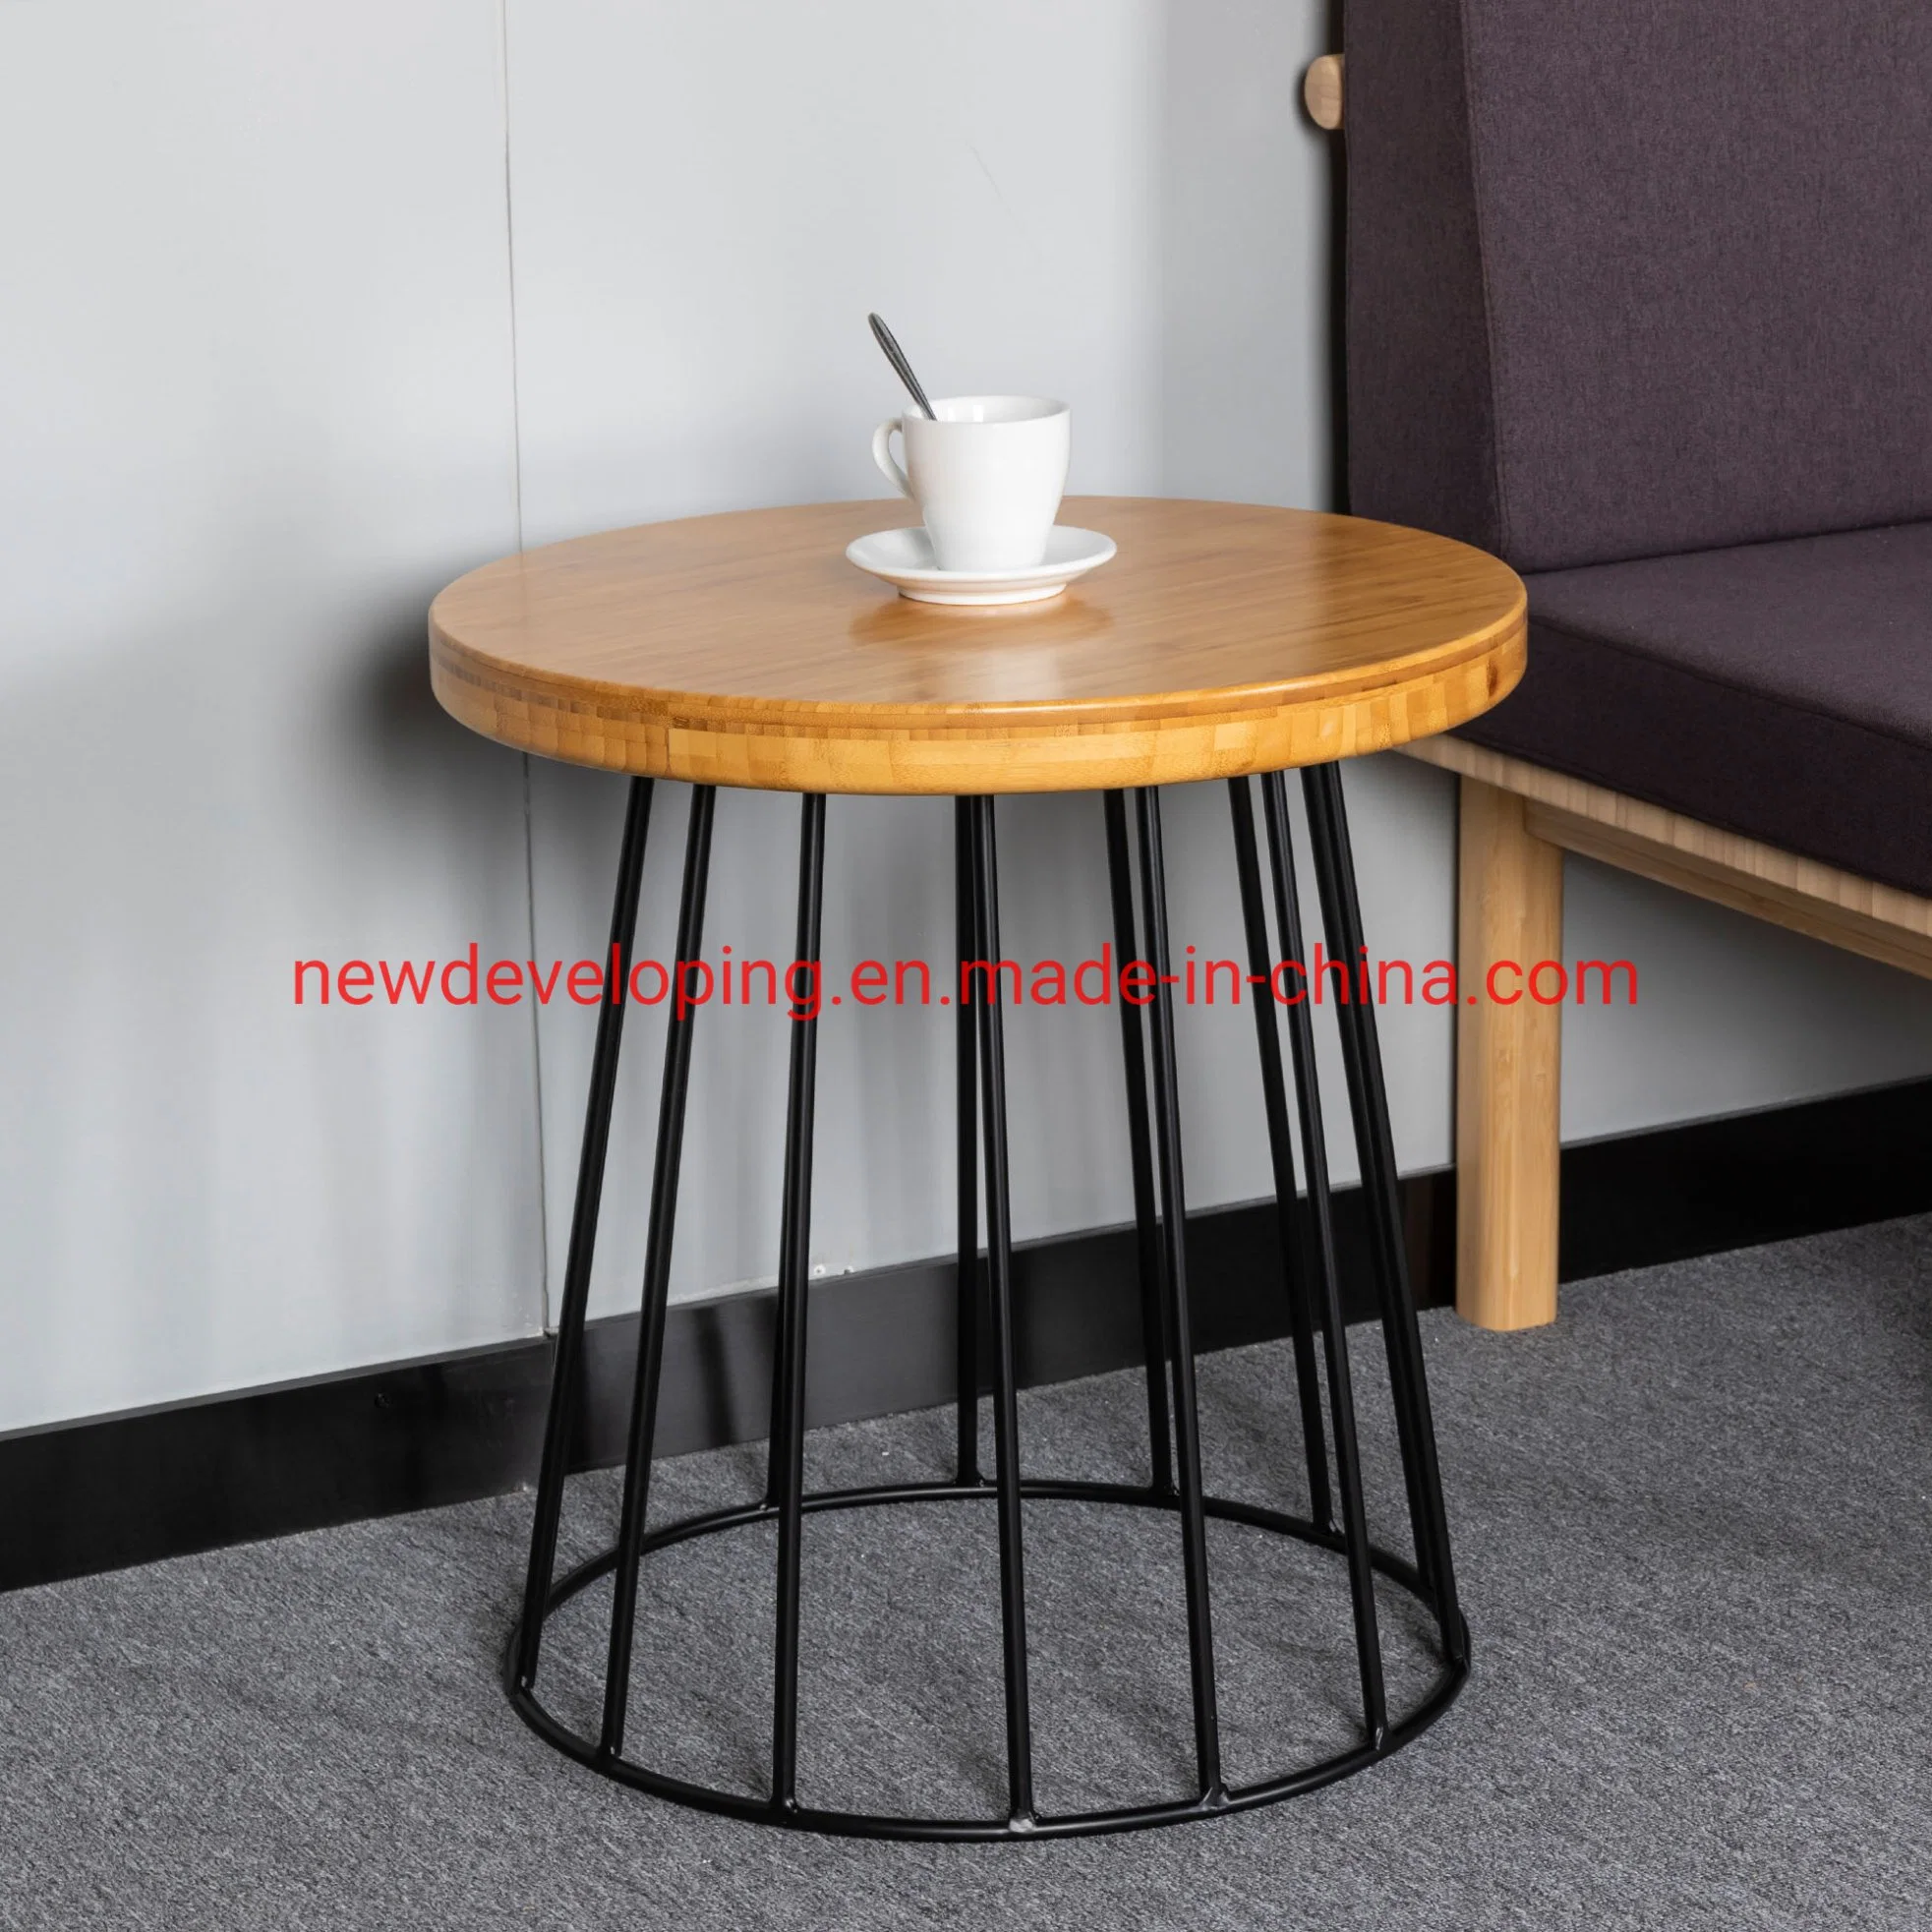 La moderna/ home / Muebles de Salón de Té de bambú lado sofá mesa de café